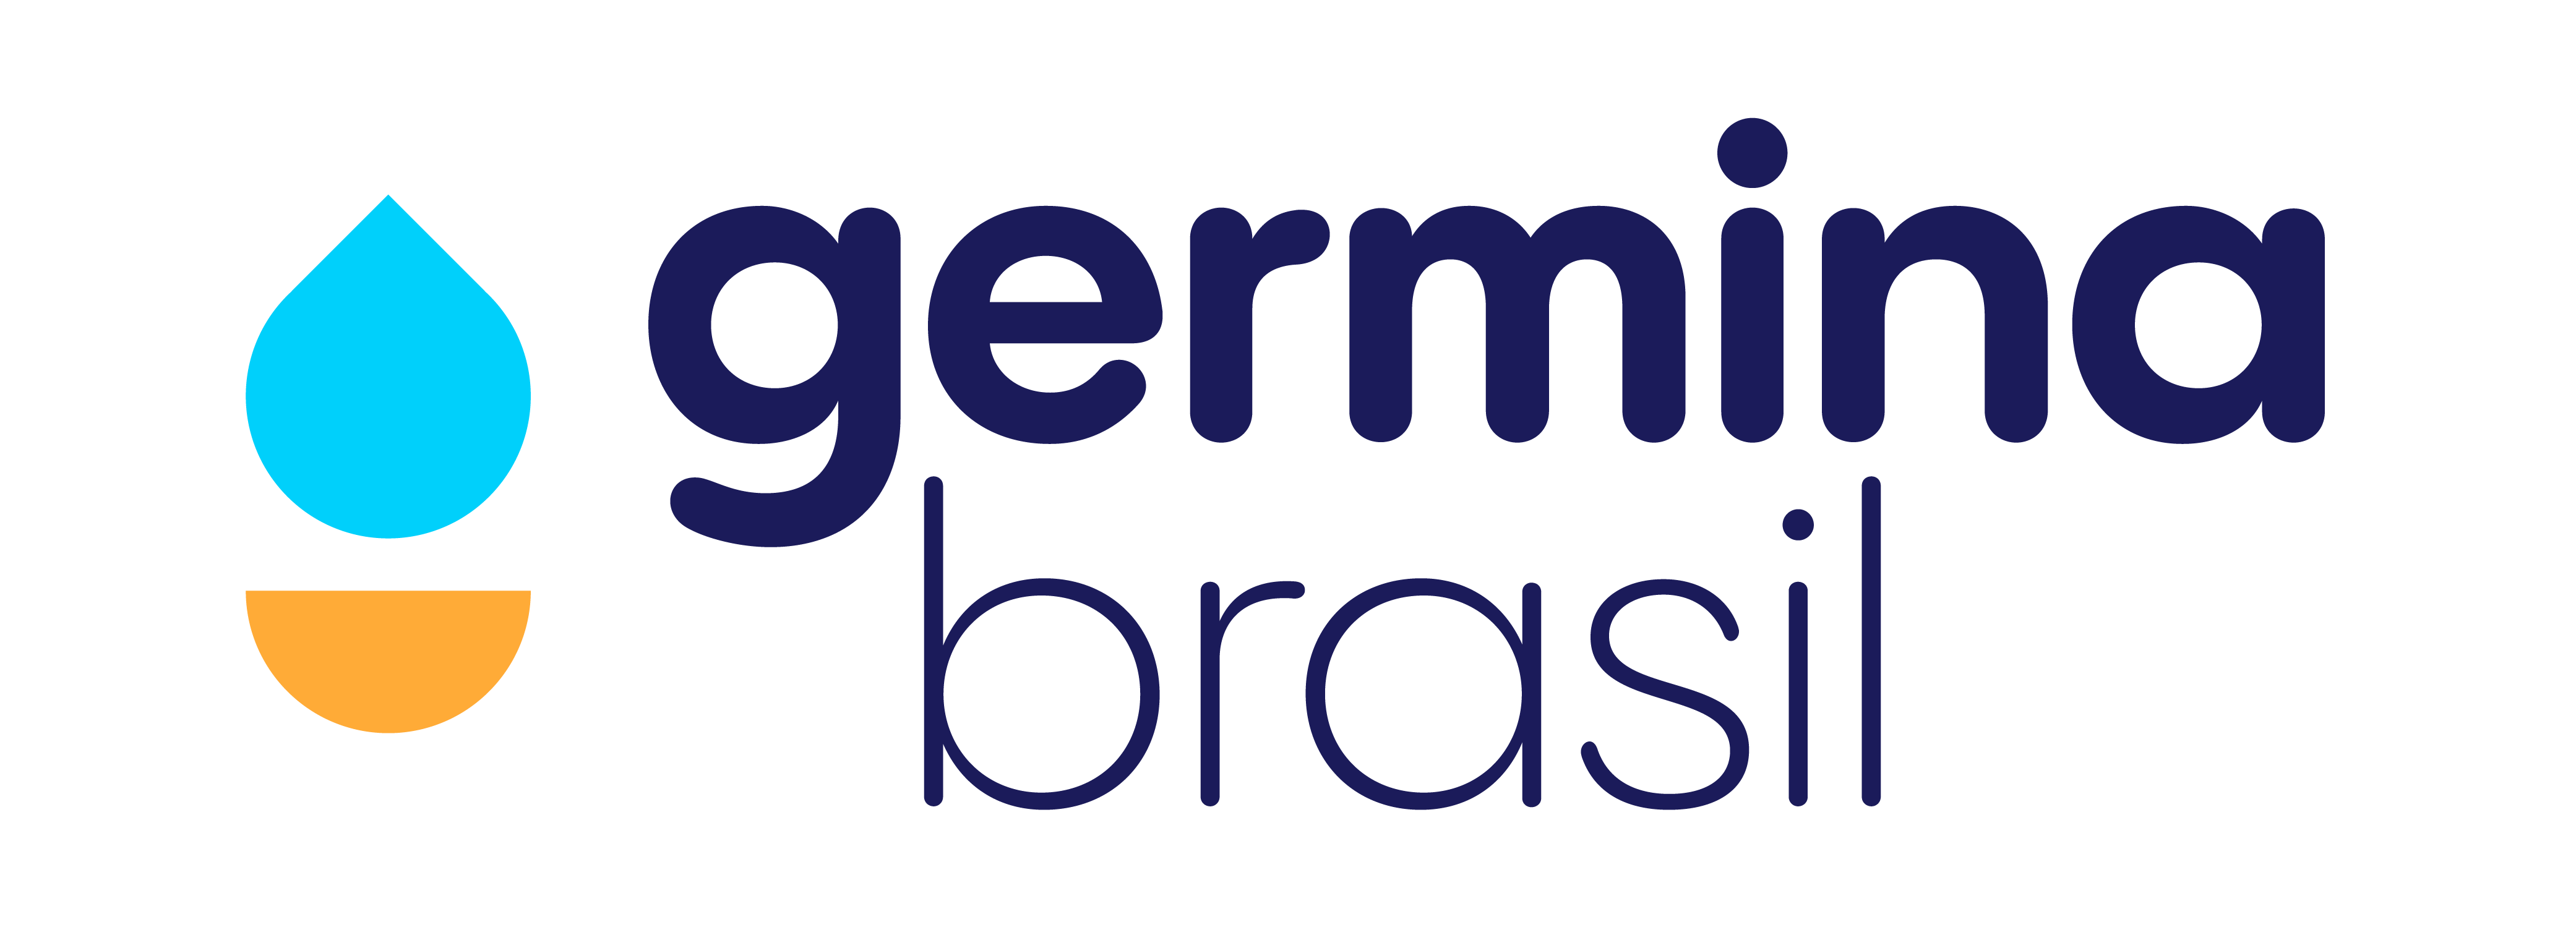 Logo-Germina-Vertical-01